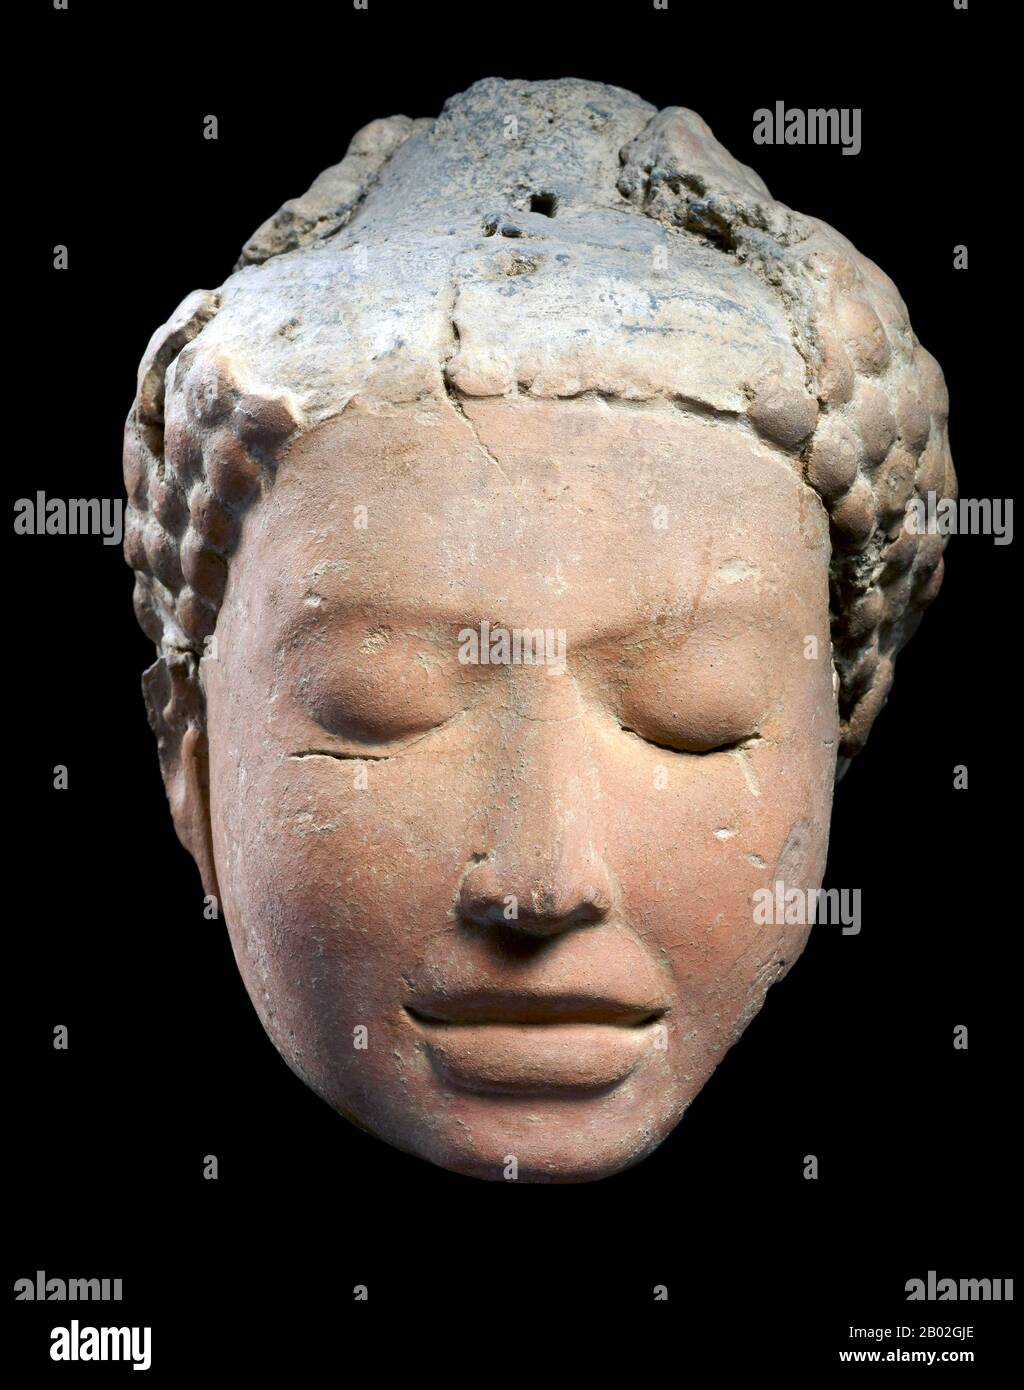 Il periodo di Dvaravati (Thai: ทวารวดี, RTGS: Thawawawadi) è durato dal 6th al 13th secolo. Dvaravati si riferisce sia ad una cultura che ad un conglomerato disparato di principati. Nel 10th secolo, Dvaravati cominciò a venire sotto l'influenza dell'Impero Khmer e la Thailandia centrale fu infine invasa dal re Khmer Suryavarman II nella prima metà del 12th secolo. Haripunchai sopravvisse ai suoi progenitori meridionali fino alla fine del 13th secolo d.C., quando fu incorporato nel regno Lanna. La gente della regione ha usato l'antica lingua del Mon, ma se fossero etnicamente Mo Foto Stock